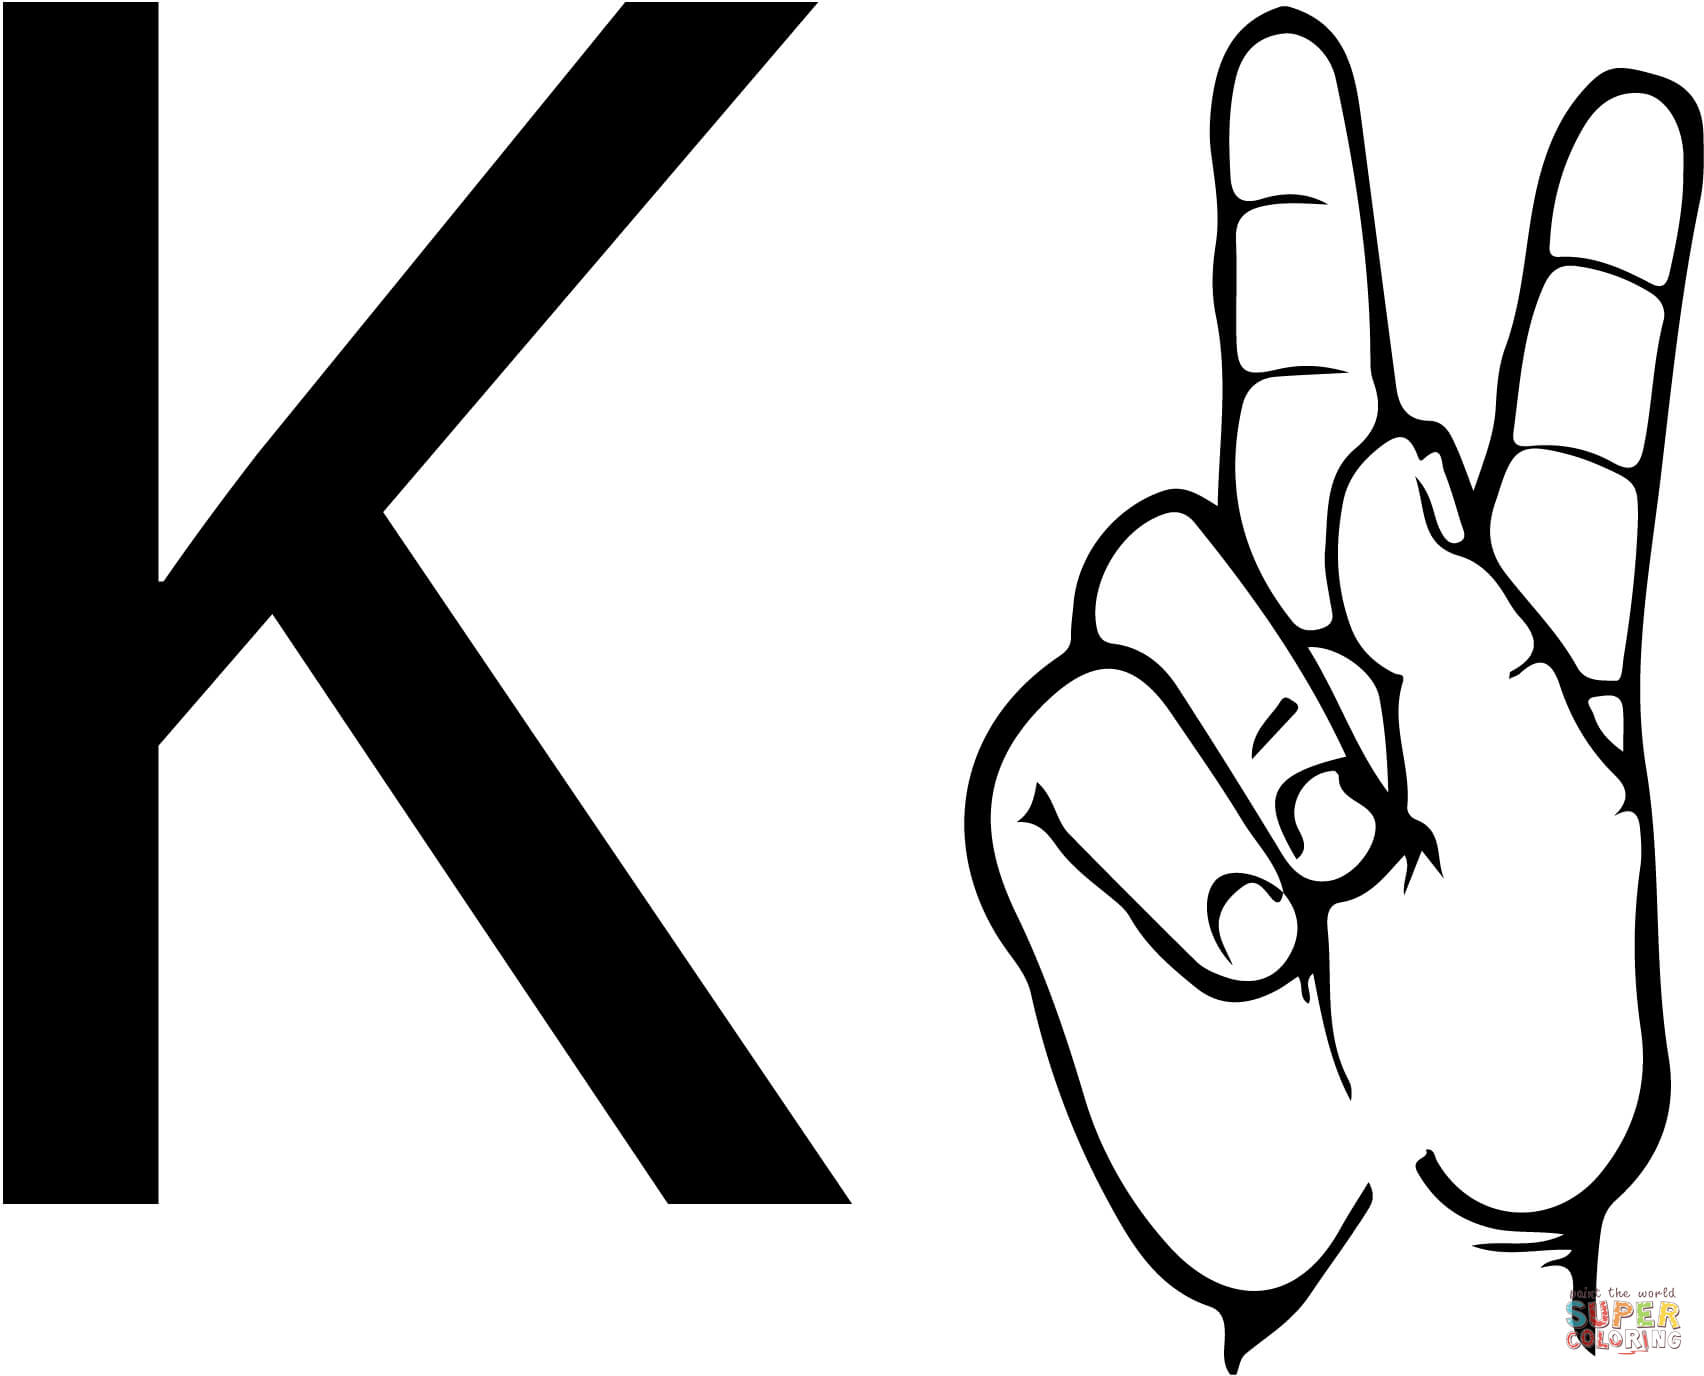 Lettre K de la langue des signes ASL à partir de la lettre K